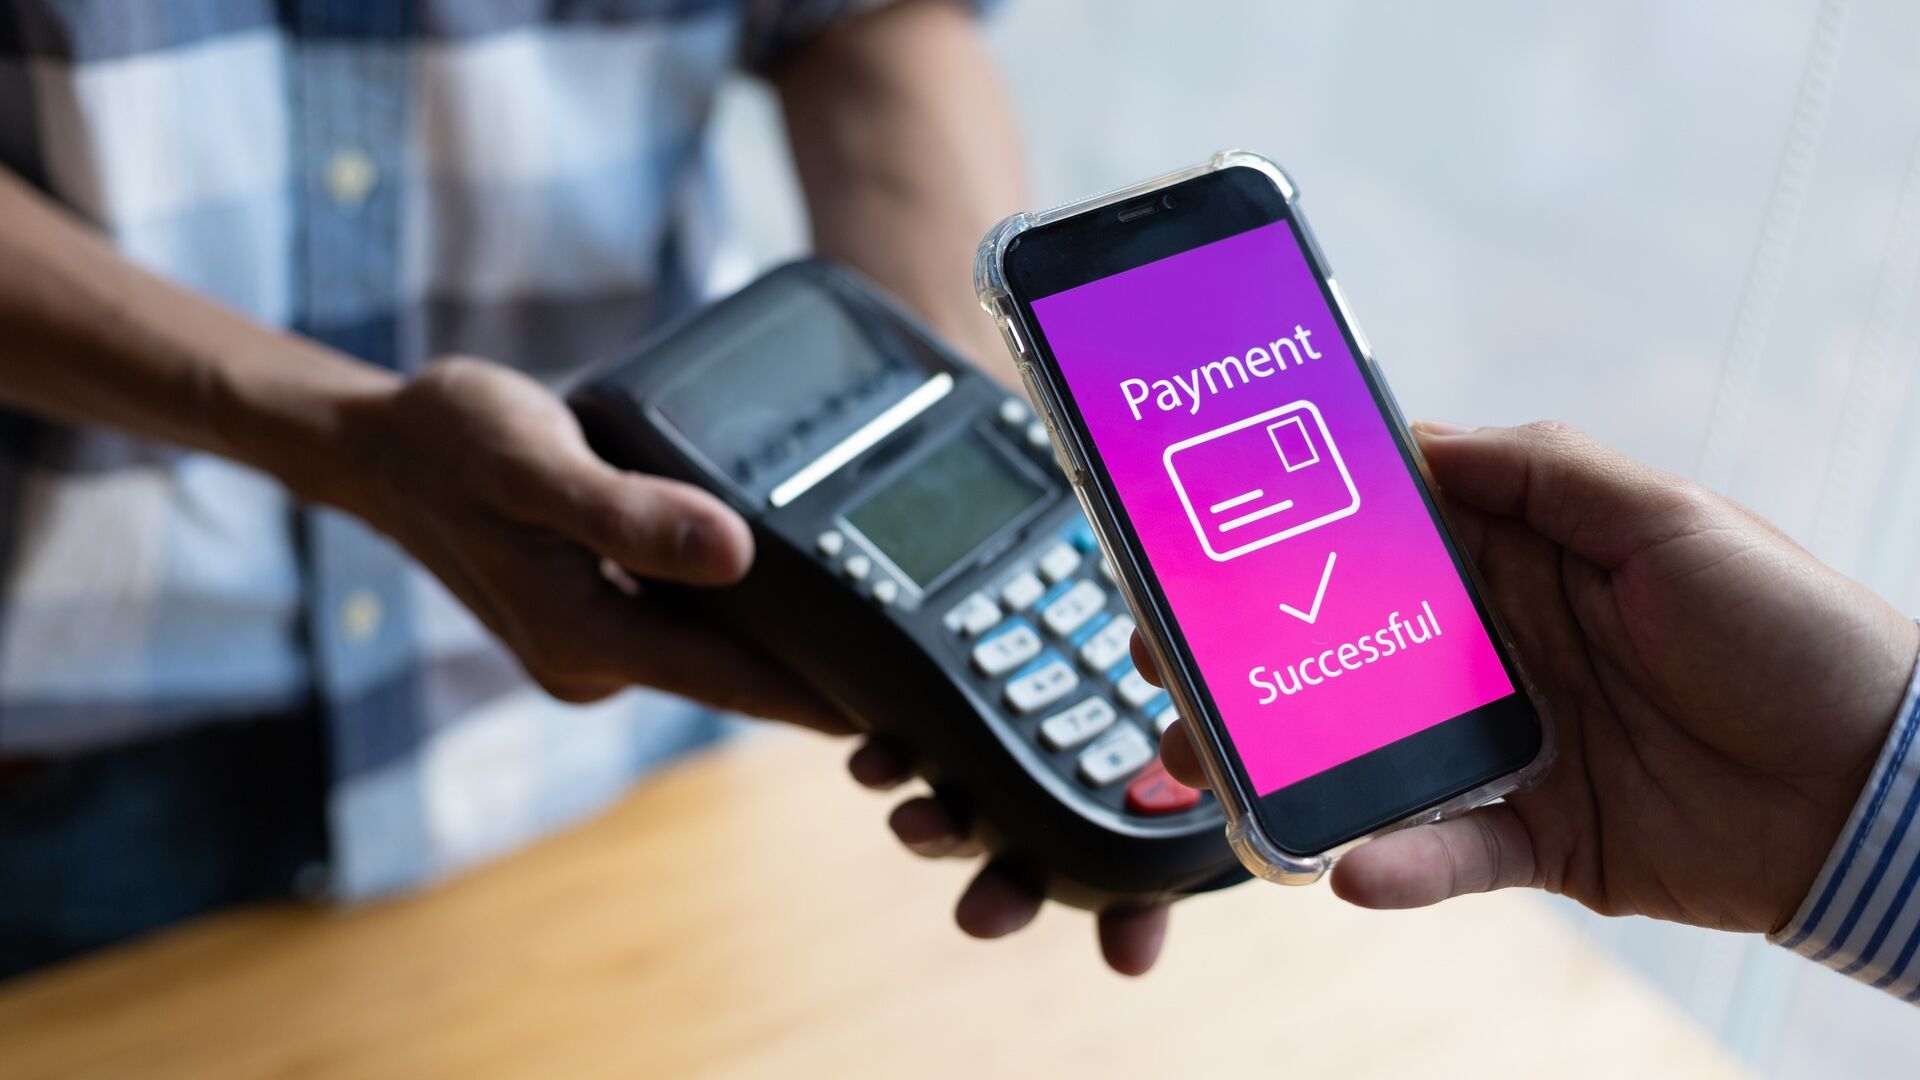 Mobilné platby: na získanie dôvery spotrebiteľov je potrebné efektívne komunikovať výhody mobilných platieb a odstrániť bezpečnostné problémy